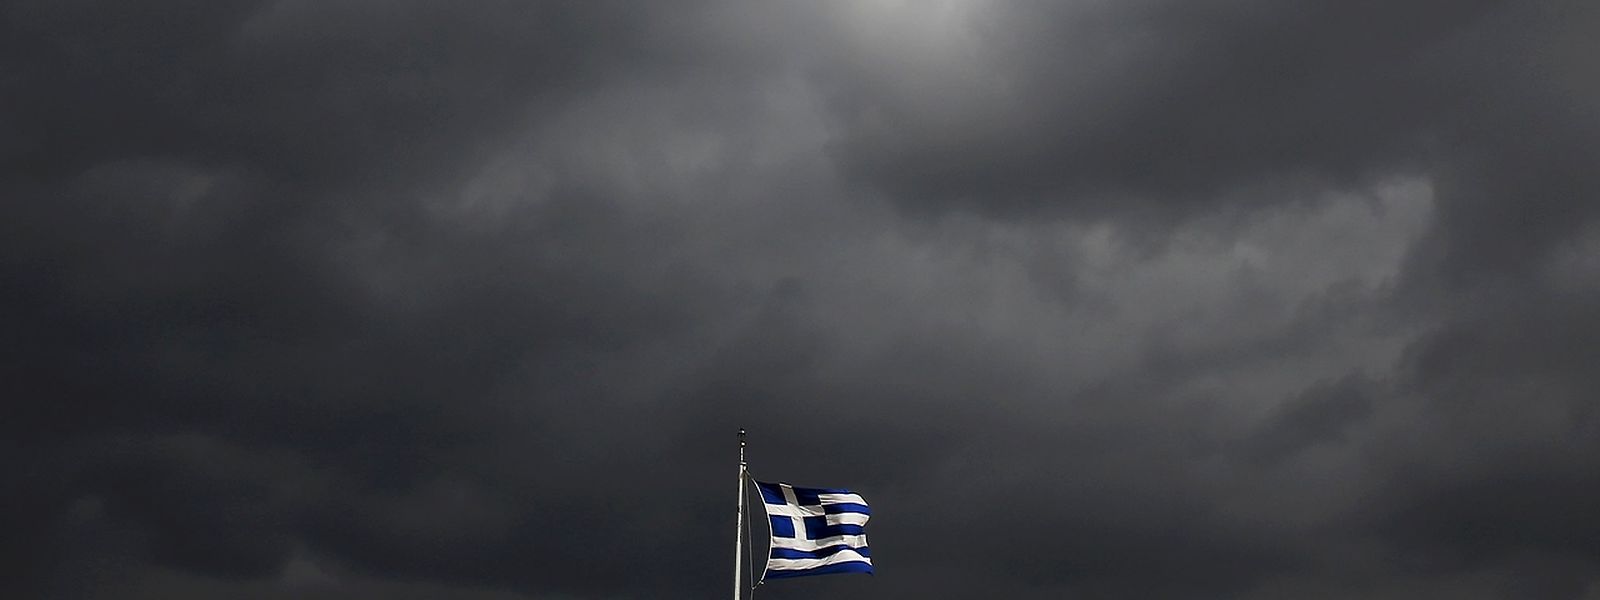 Über der griechischen Flagge ziehen sehr düstere Wolken auf - in manchem Sinne des Wortes.